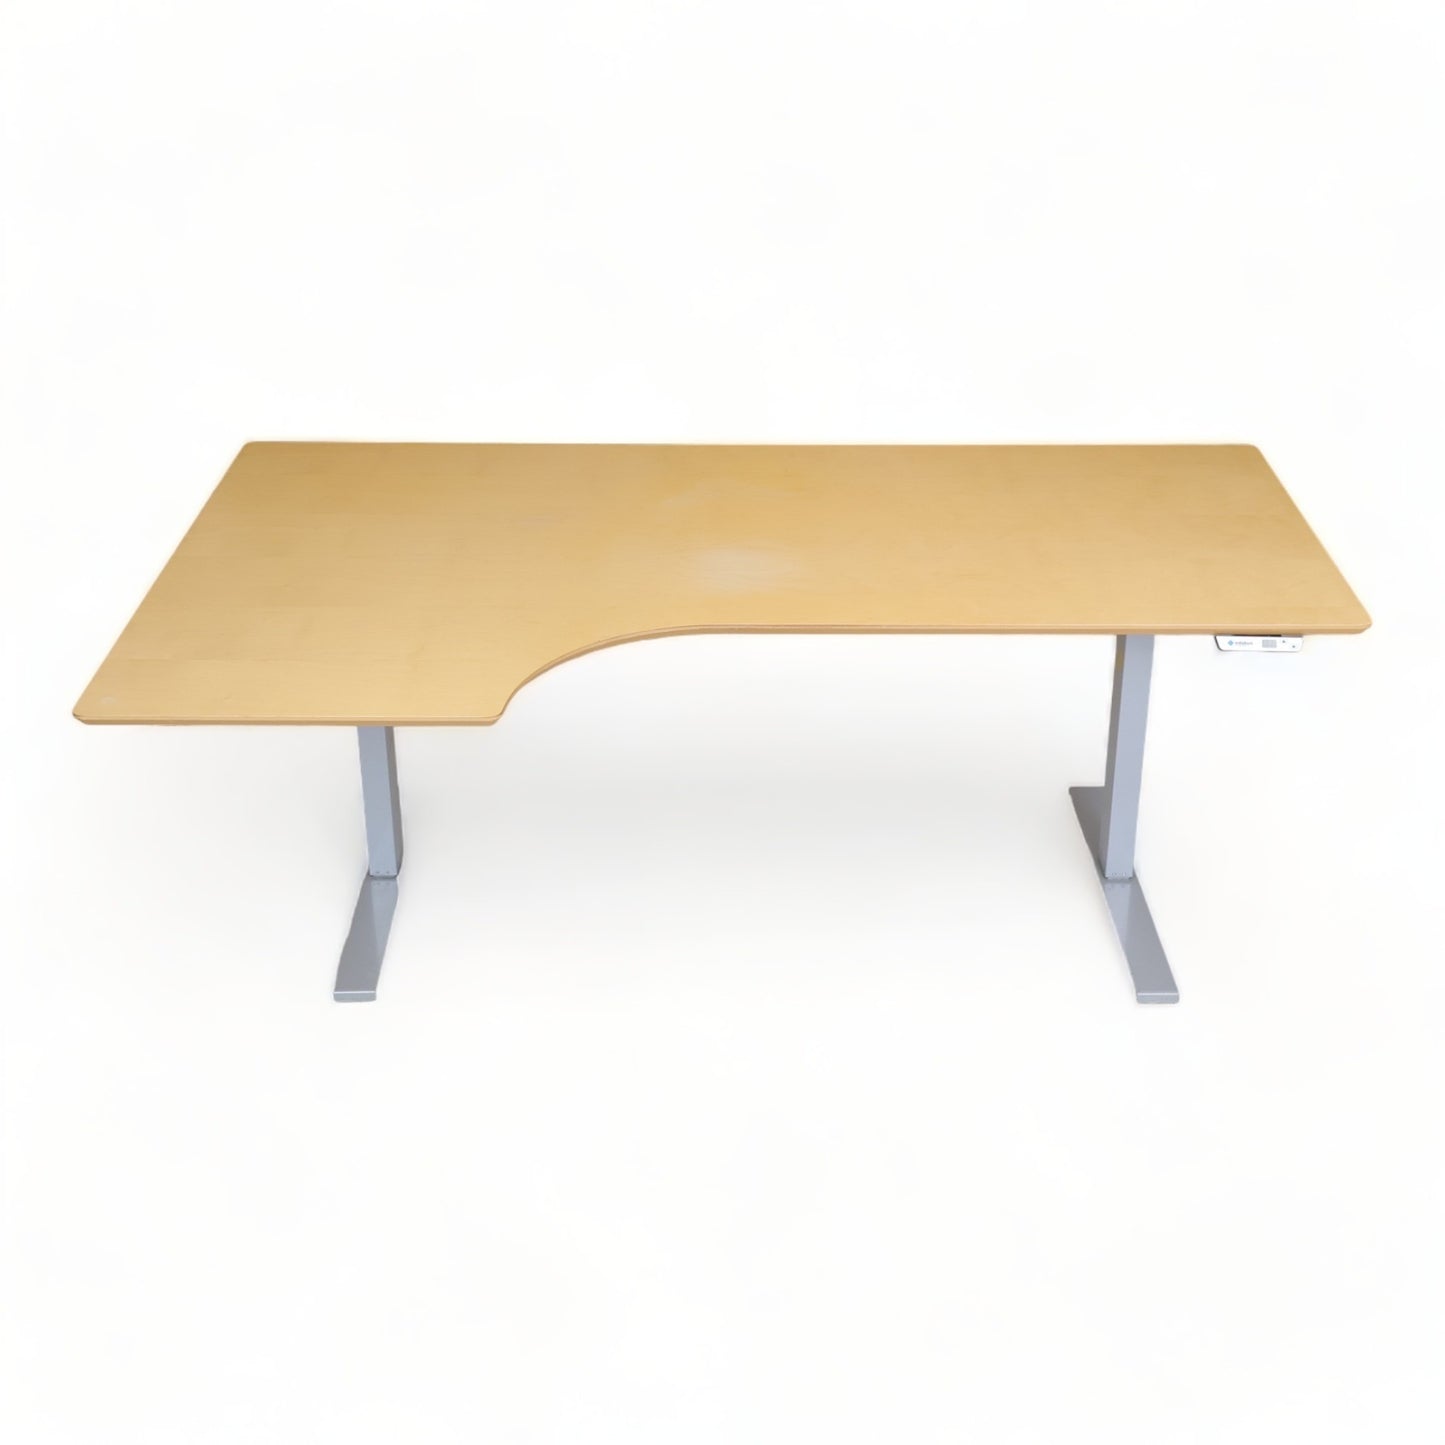 Kvalitetsikret | 190x110, elektrisk hev/senk bord med sving